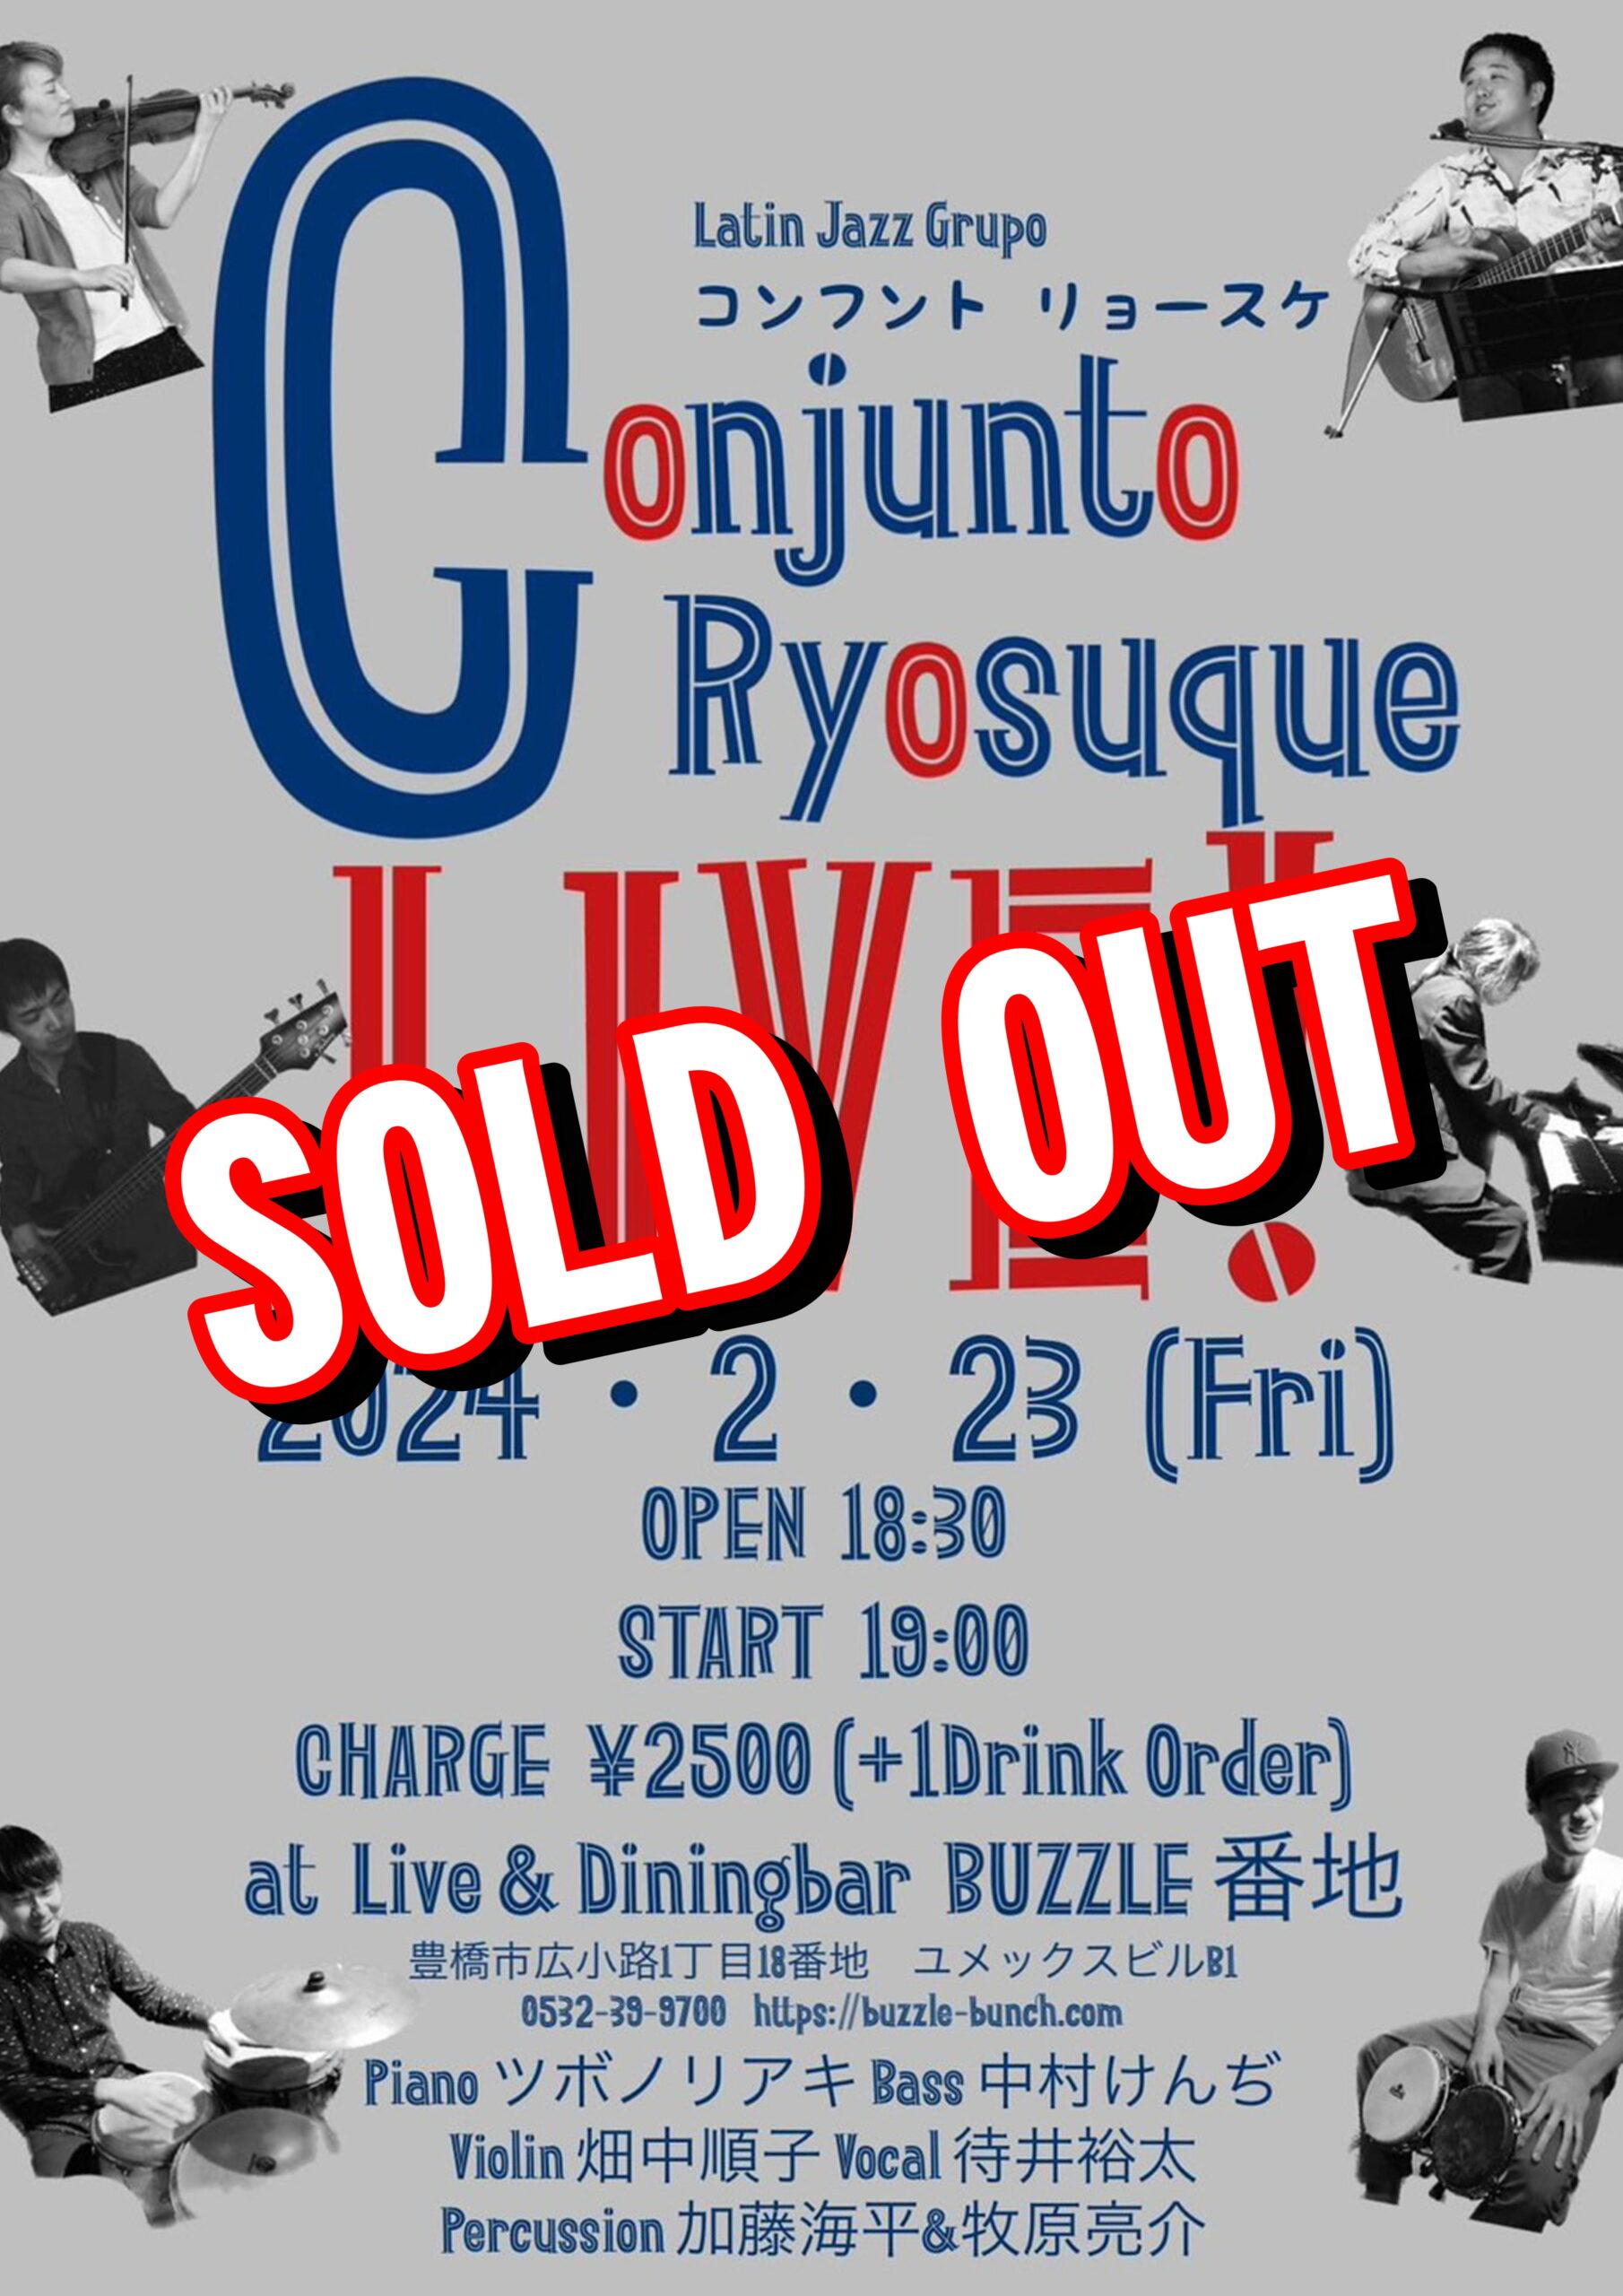 2024年2月23日(Fri) Latin Jazz Grupo Conjunto Ryosuque LIVE! SOLD OUT